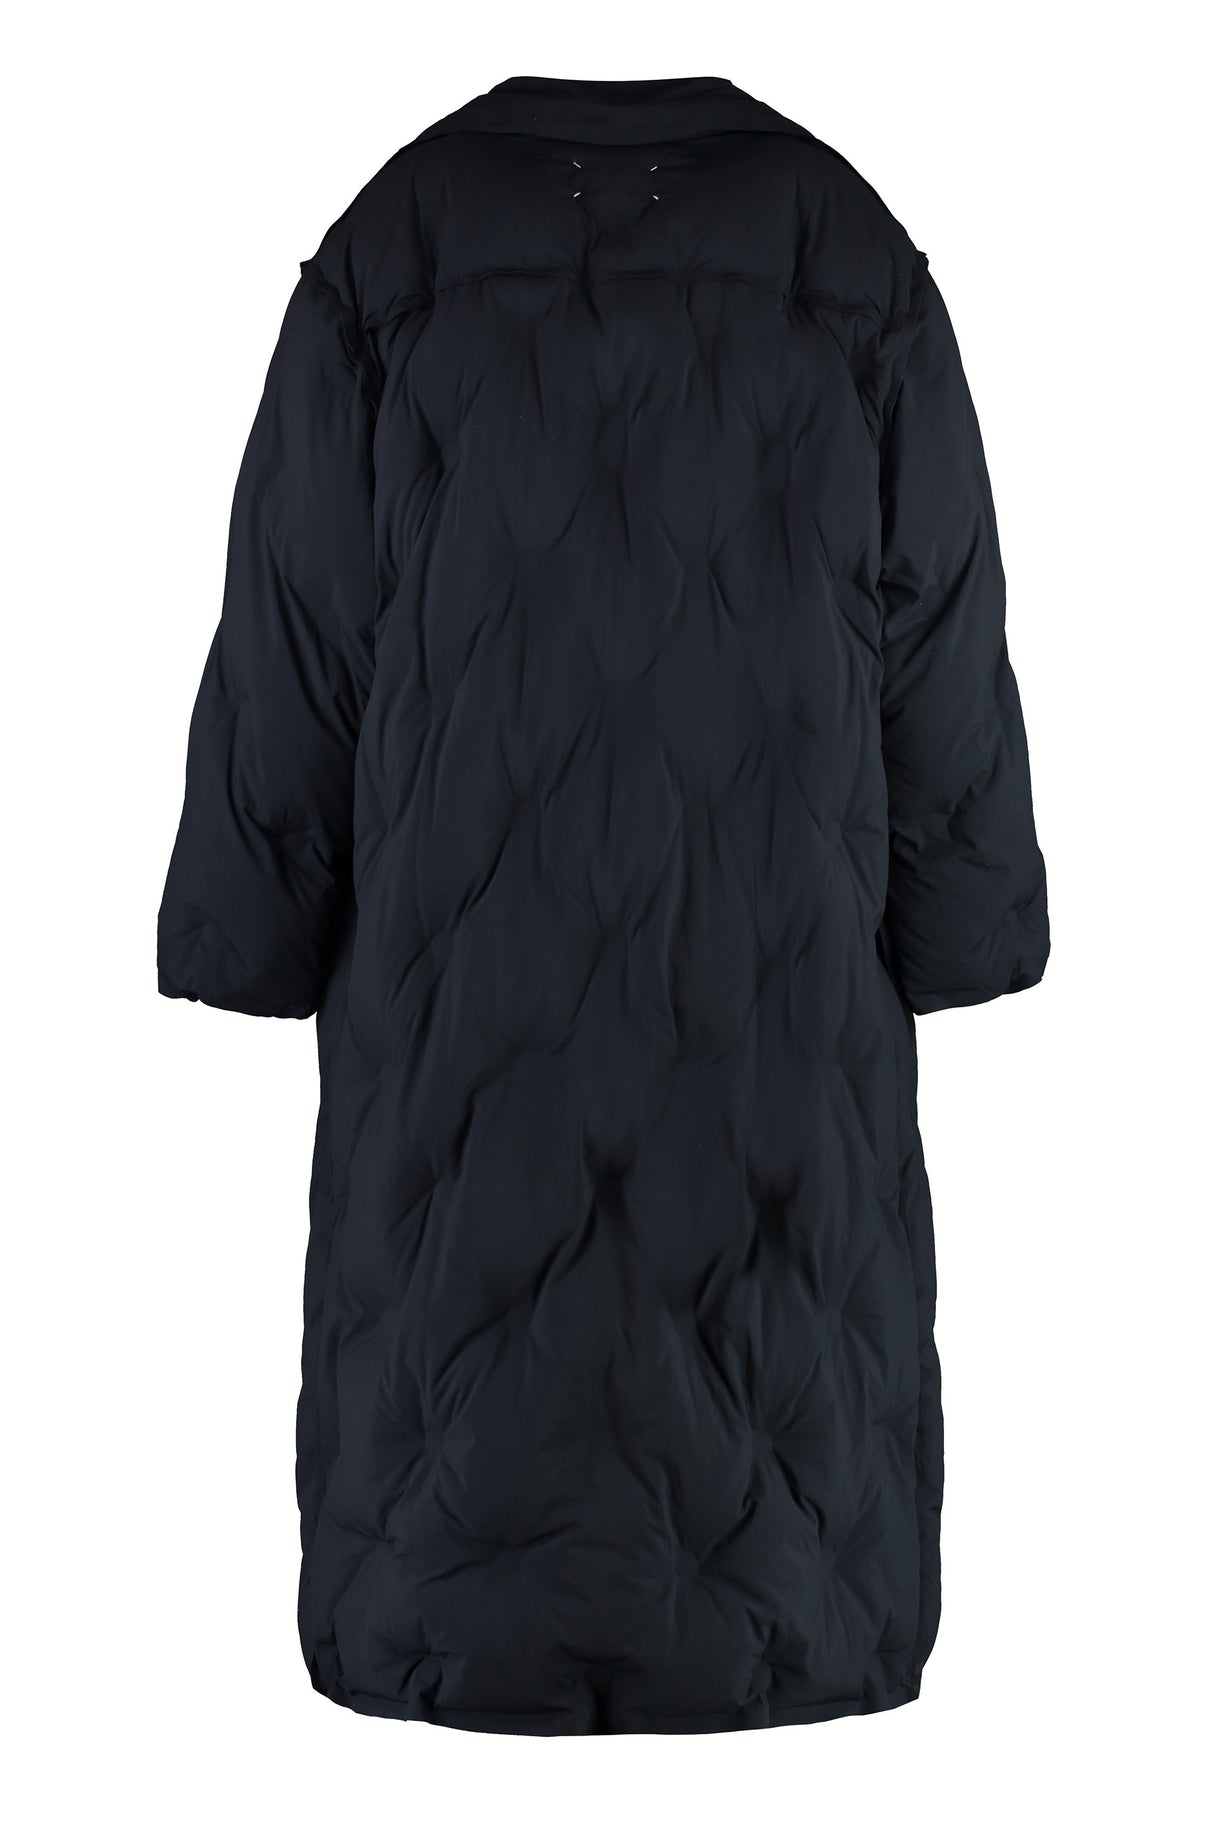 ブラックのオーバーサイズパッドジャケット - 女性向けのエコフレンドリーなダブルブレストアウター FW23